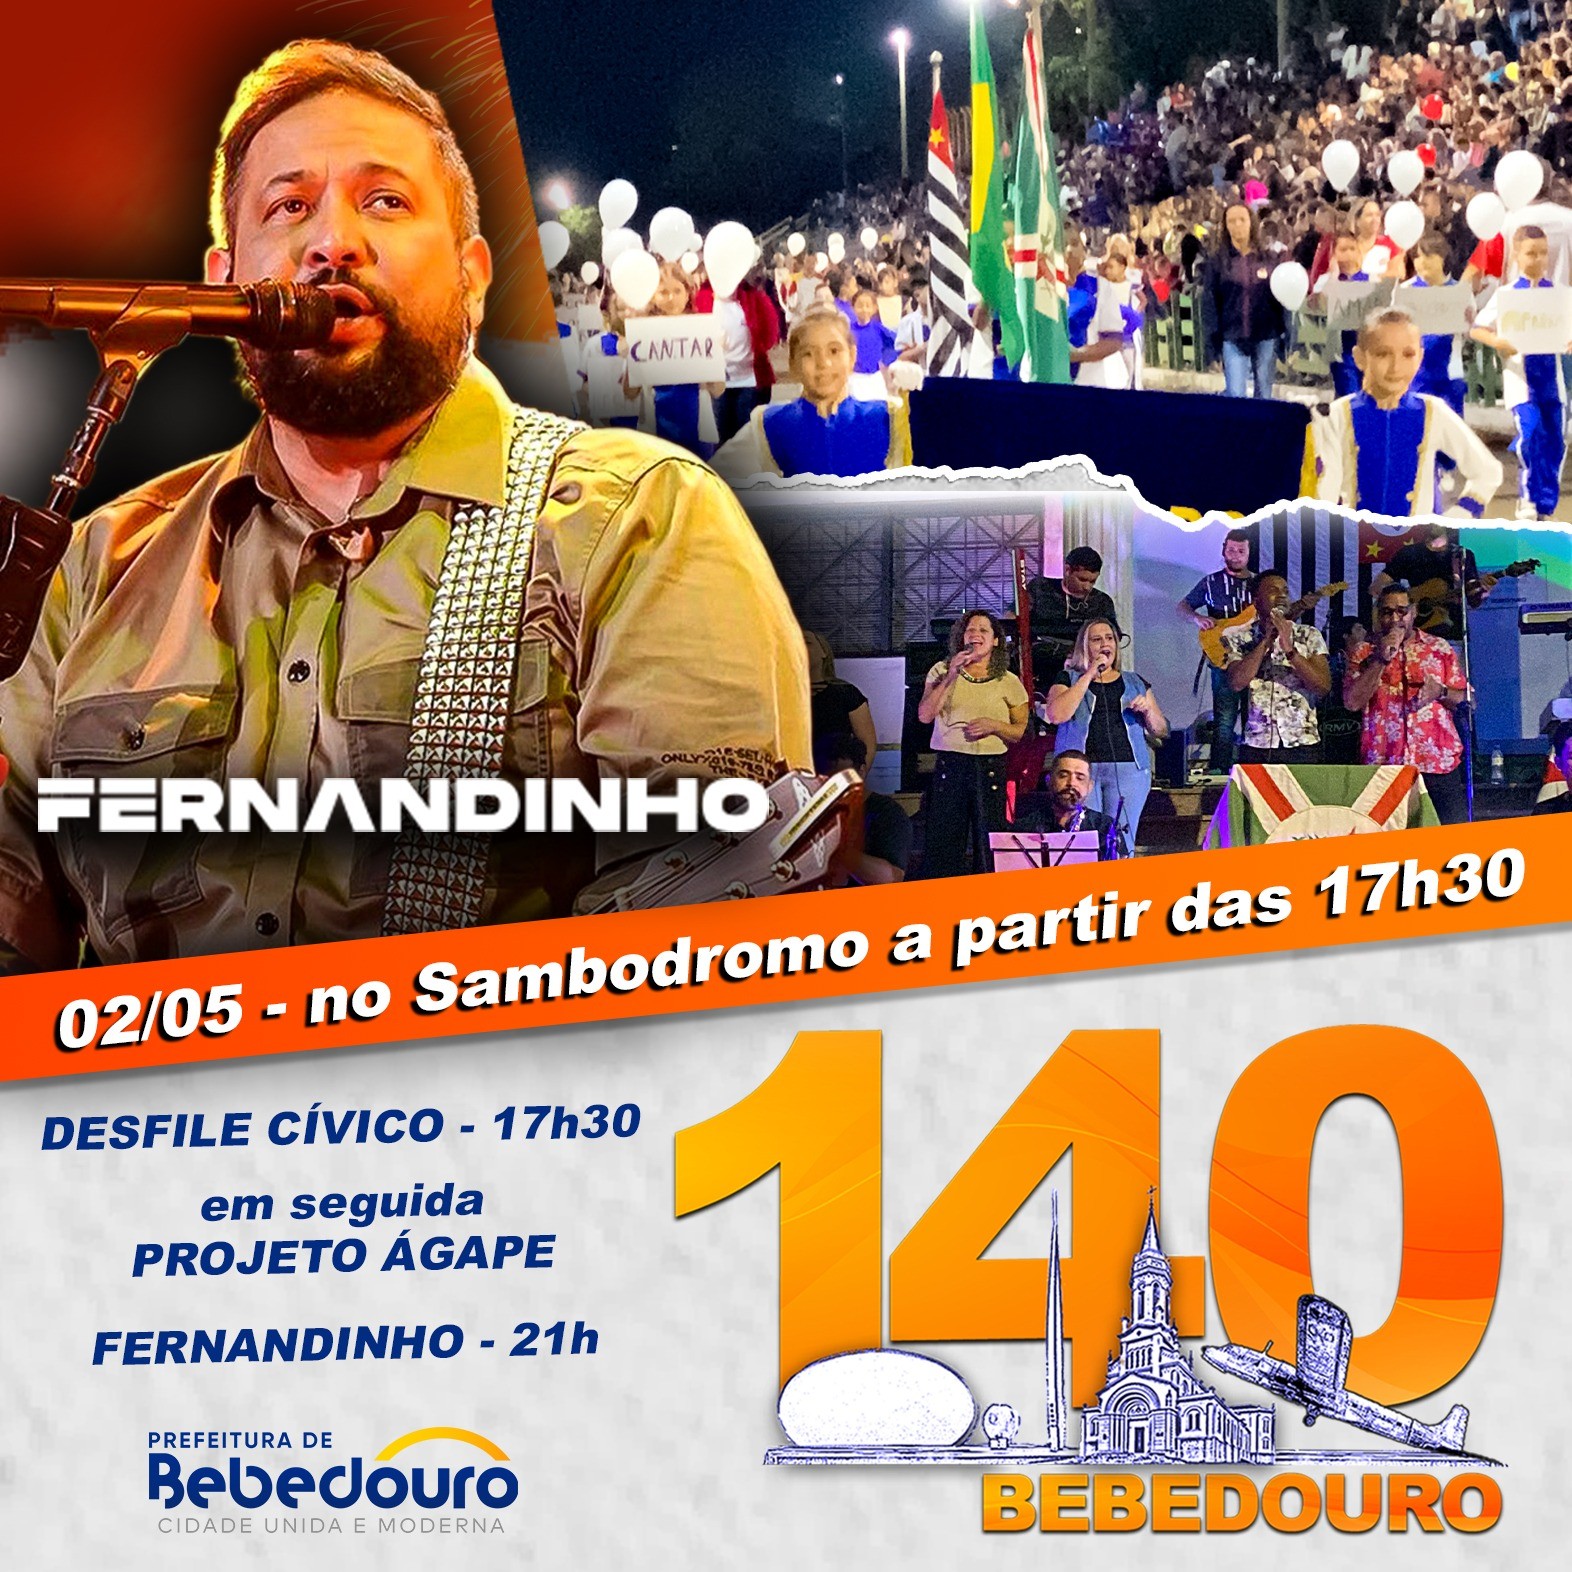 Bebedouro celebrará seus 140 anos com Desfile Cívico, shows e Bolo de aniversário